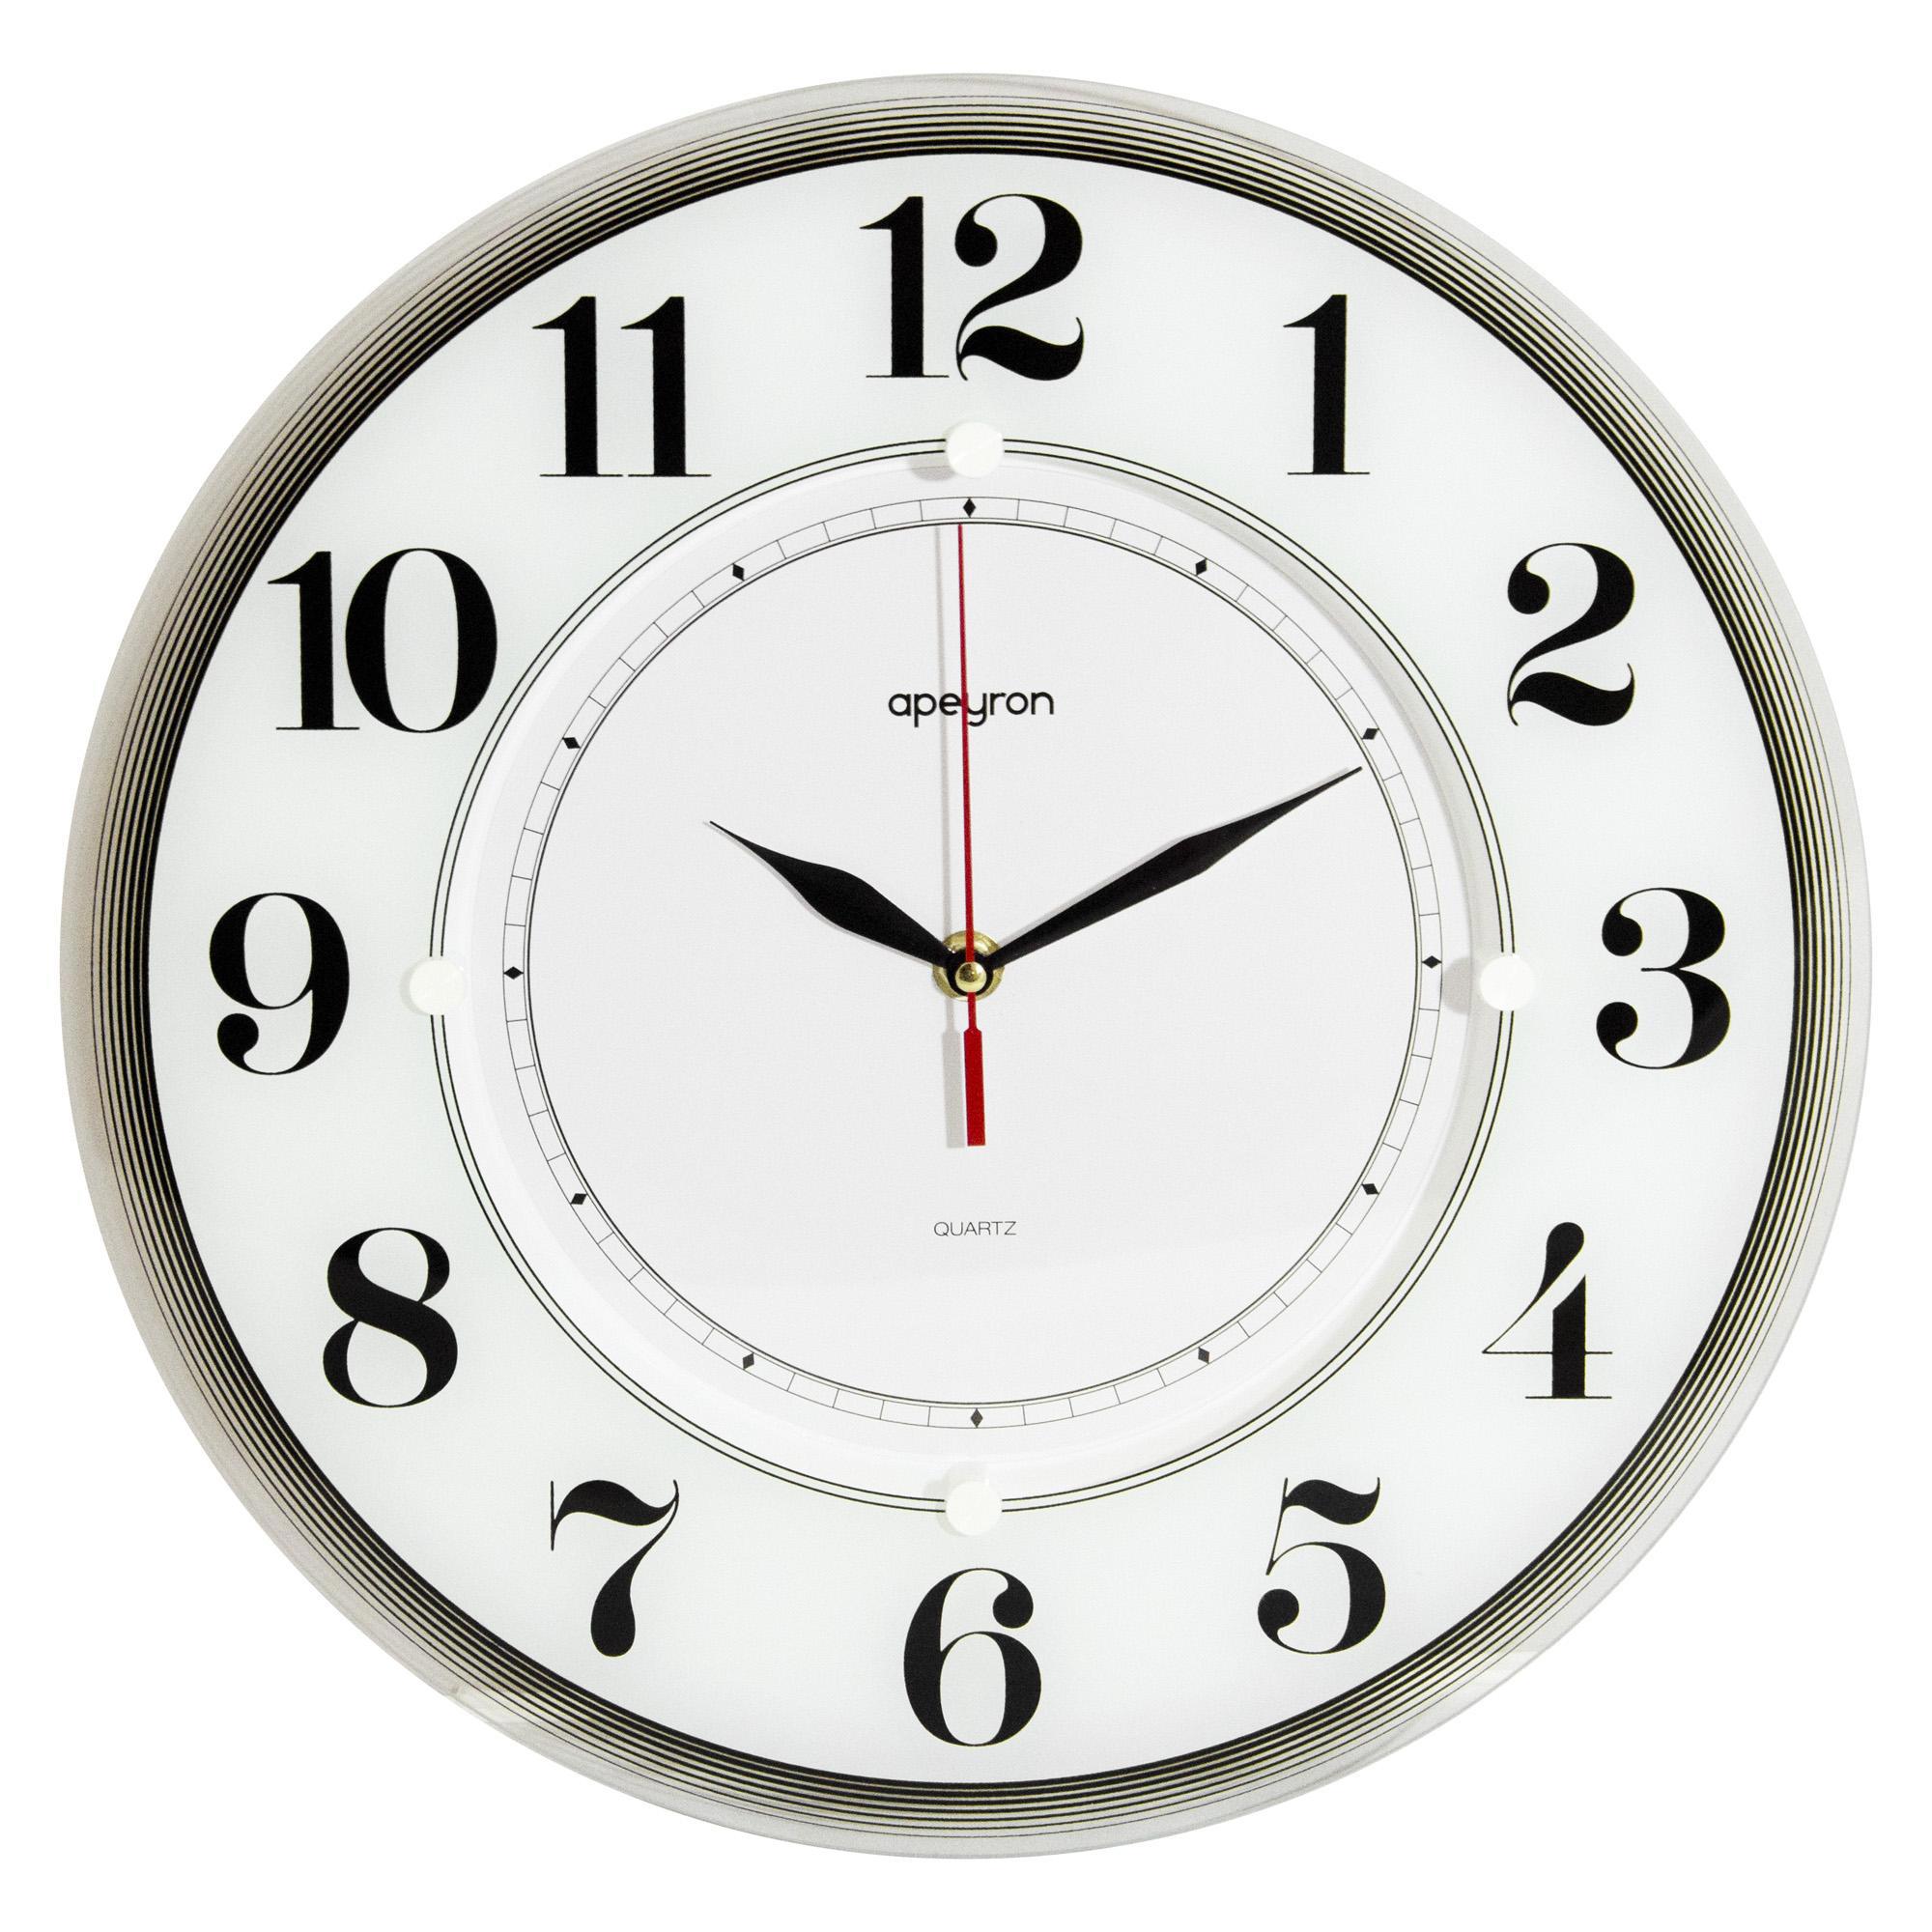 Модели часов настенных. Часы настенные Apeyron pl 1712 735. Часы настенные Apeyron pl. Часы настенные Apeyron pl200907. Настенные часы Apeyron, 35 см.